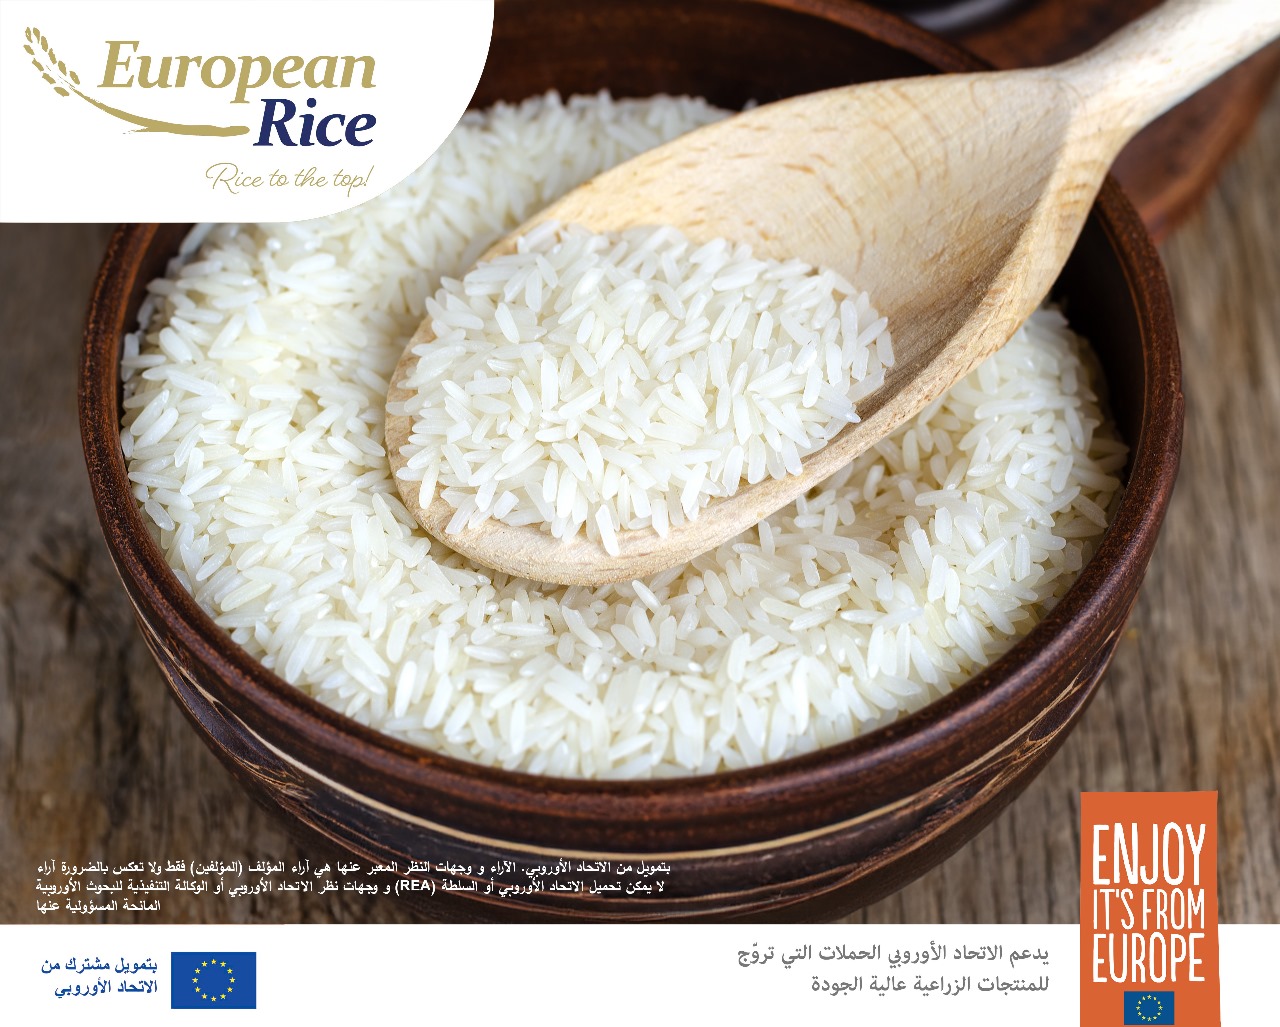 الأرز الأوروبي يضع معاييرا جديدة للتميّز في الأسواق الأردنية